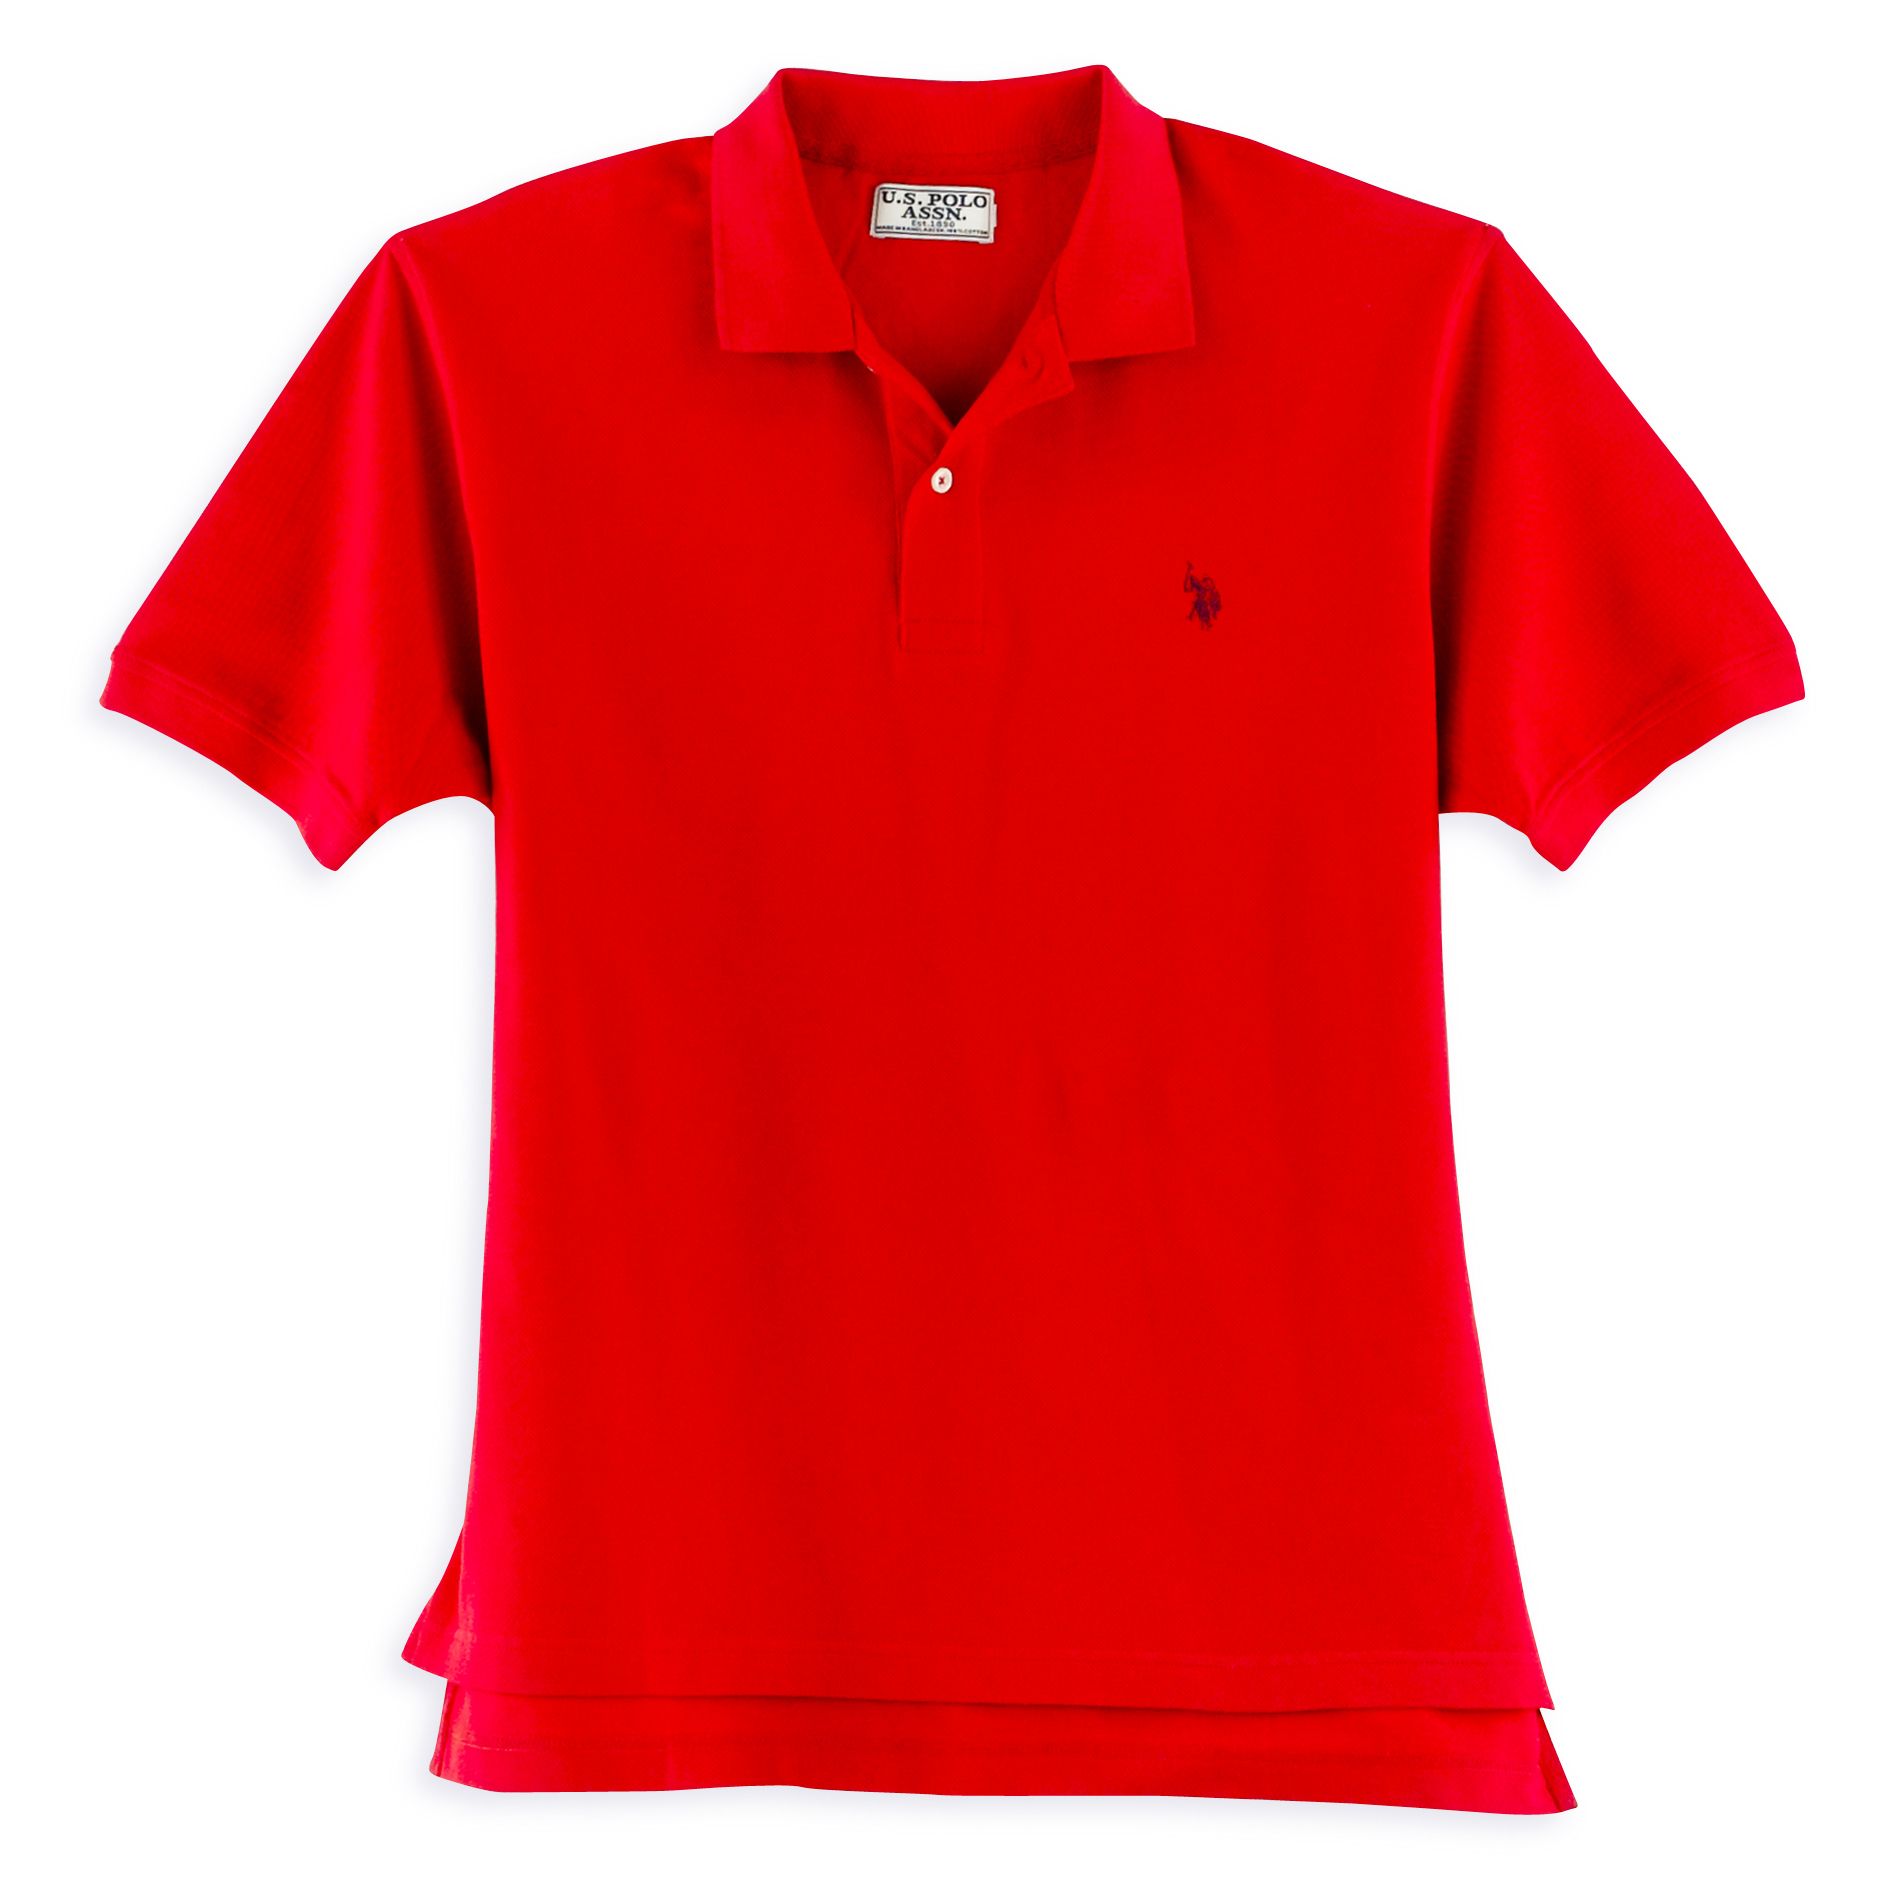 U.S. Polo Assn. Player's Edition Men's Short Sleeve Polo Shirt